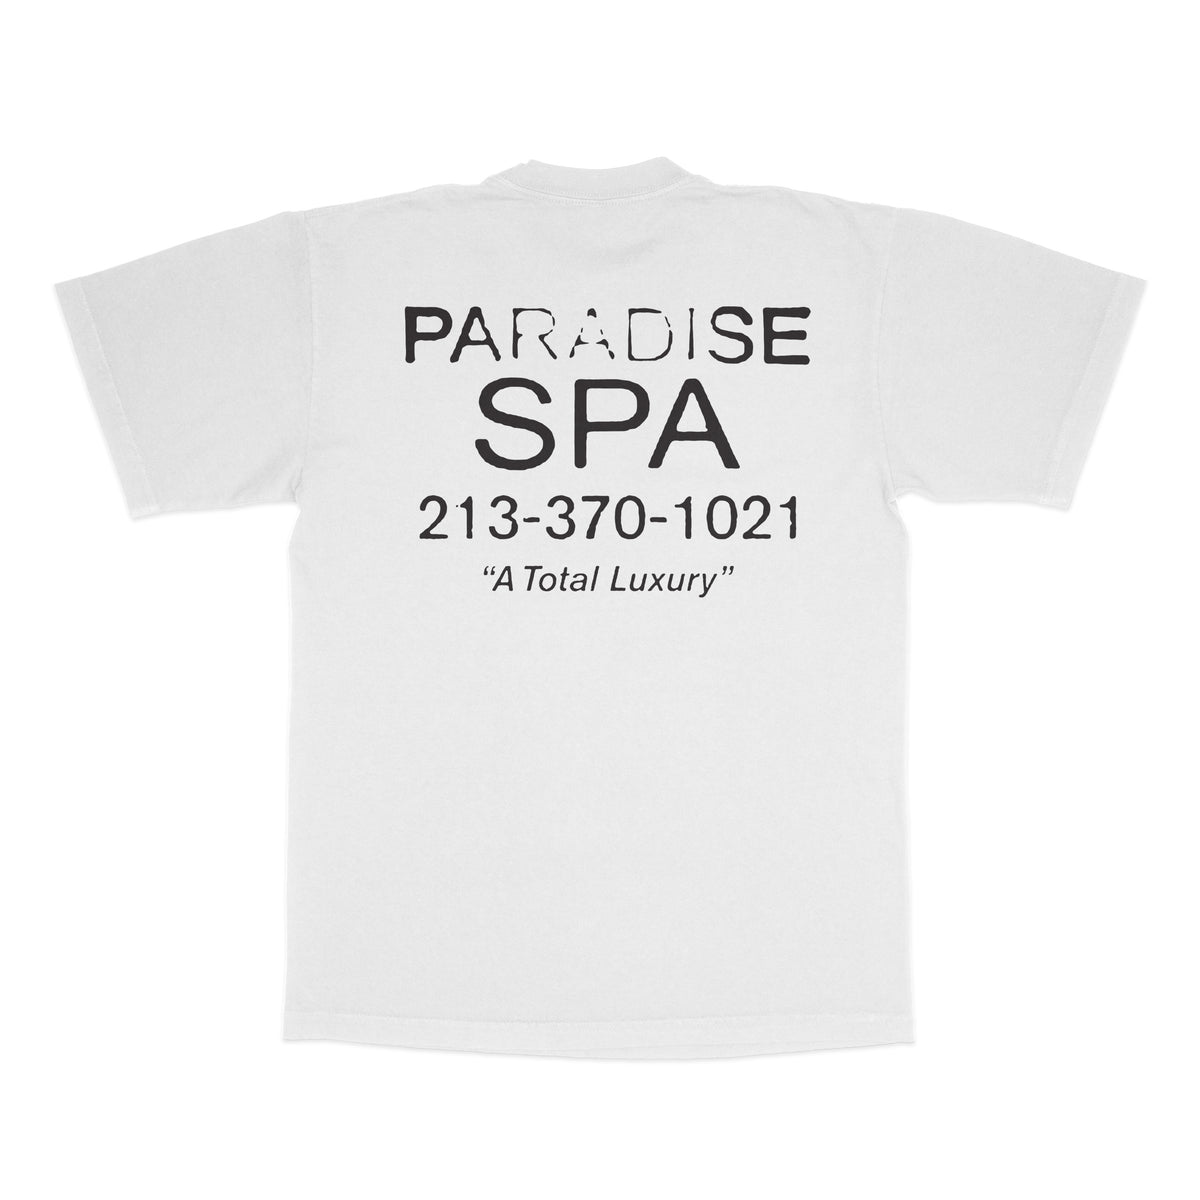 PARADISE SPA - S/S - WHITE – Total Luxury Spa